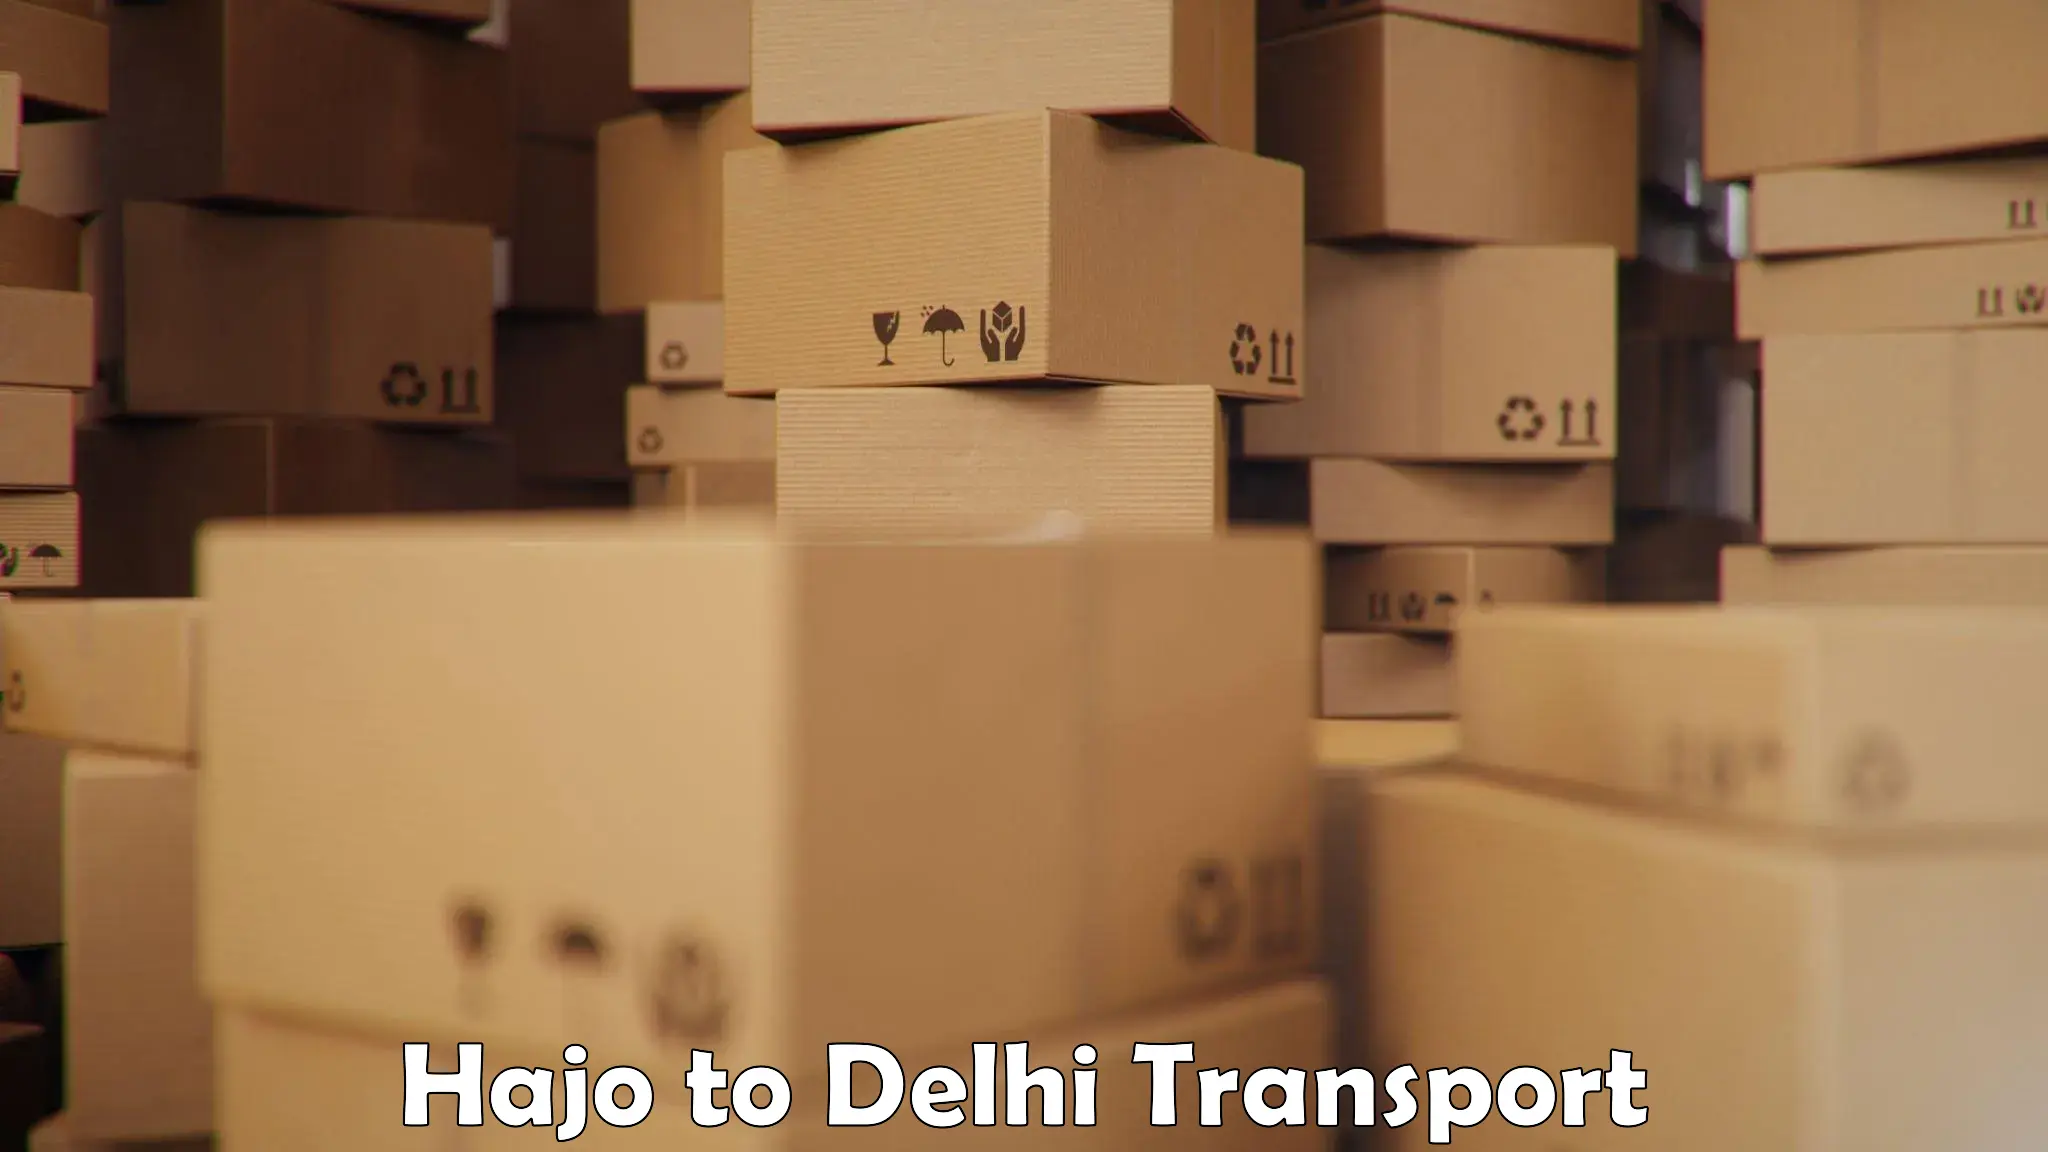 Container transport service Hajo to Delhi